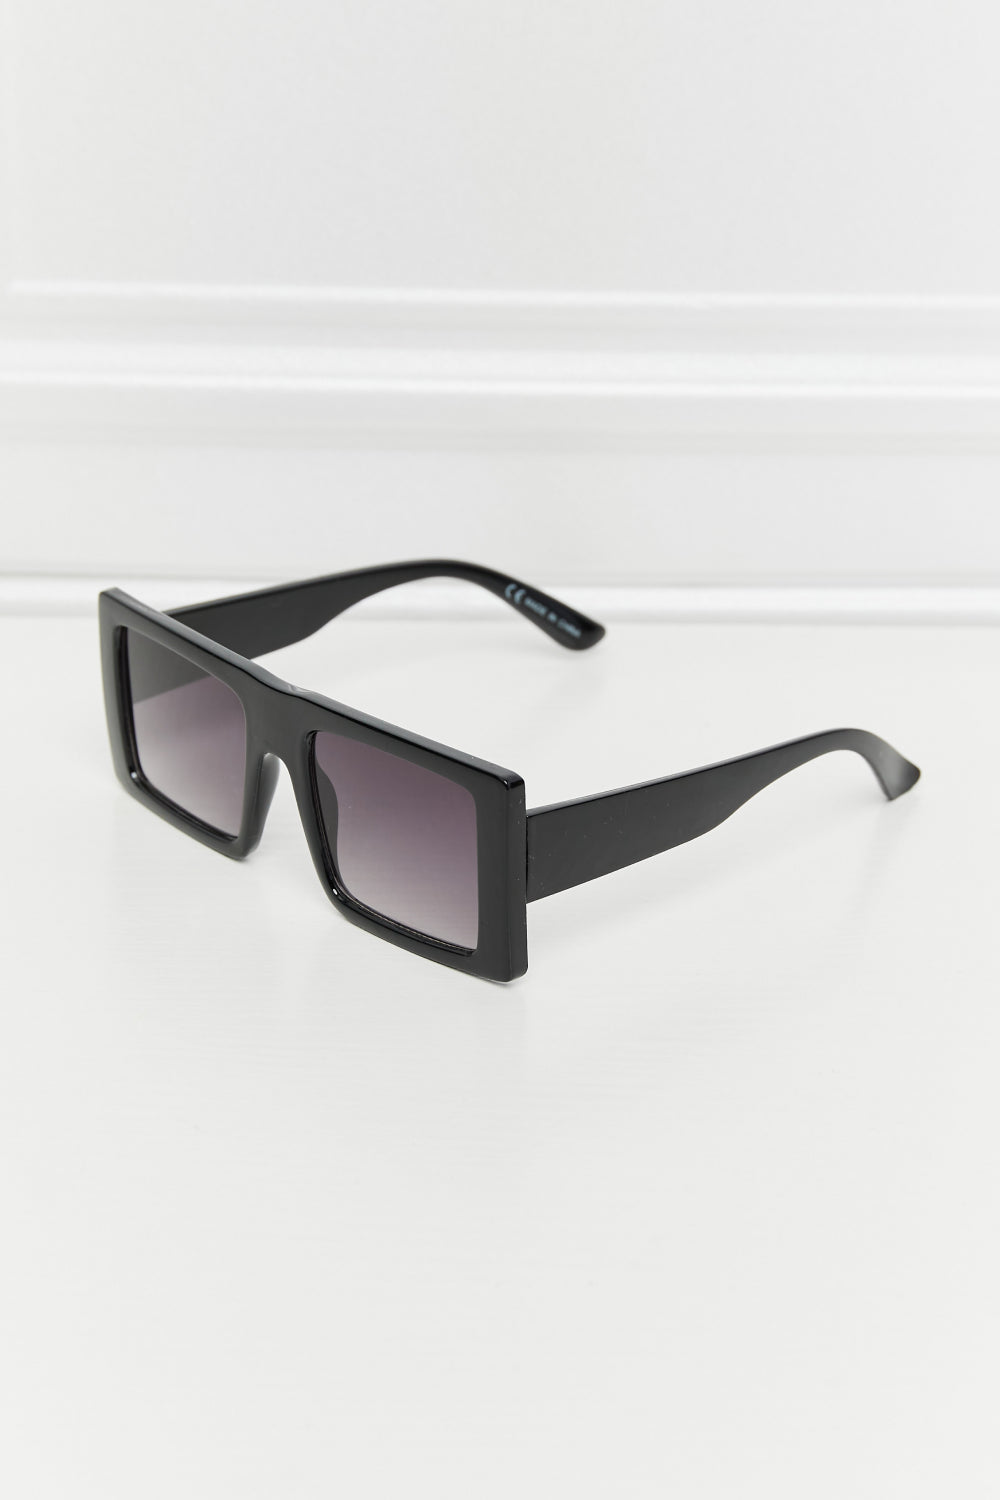 Square Polycarbonate Sunglasses Black One Size Sunglasses by Vim&Vigor | Vim&Vigor Boutique